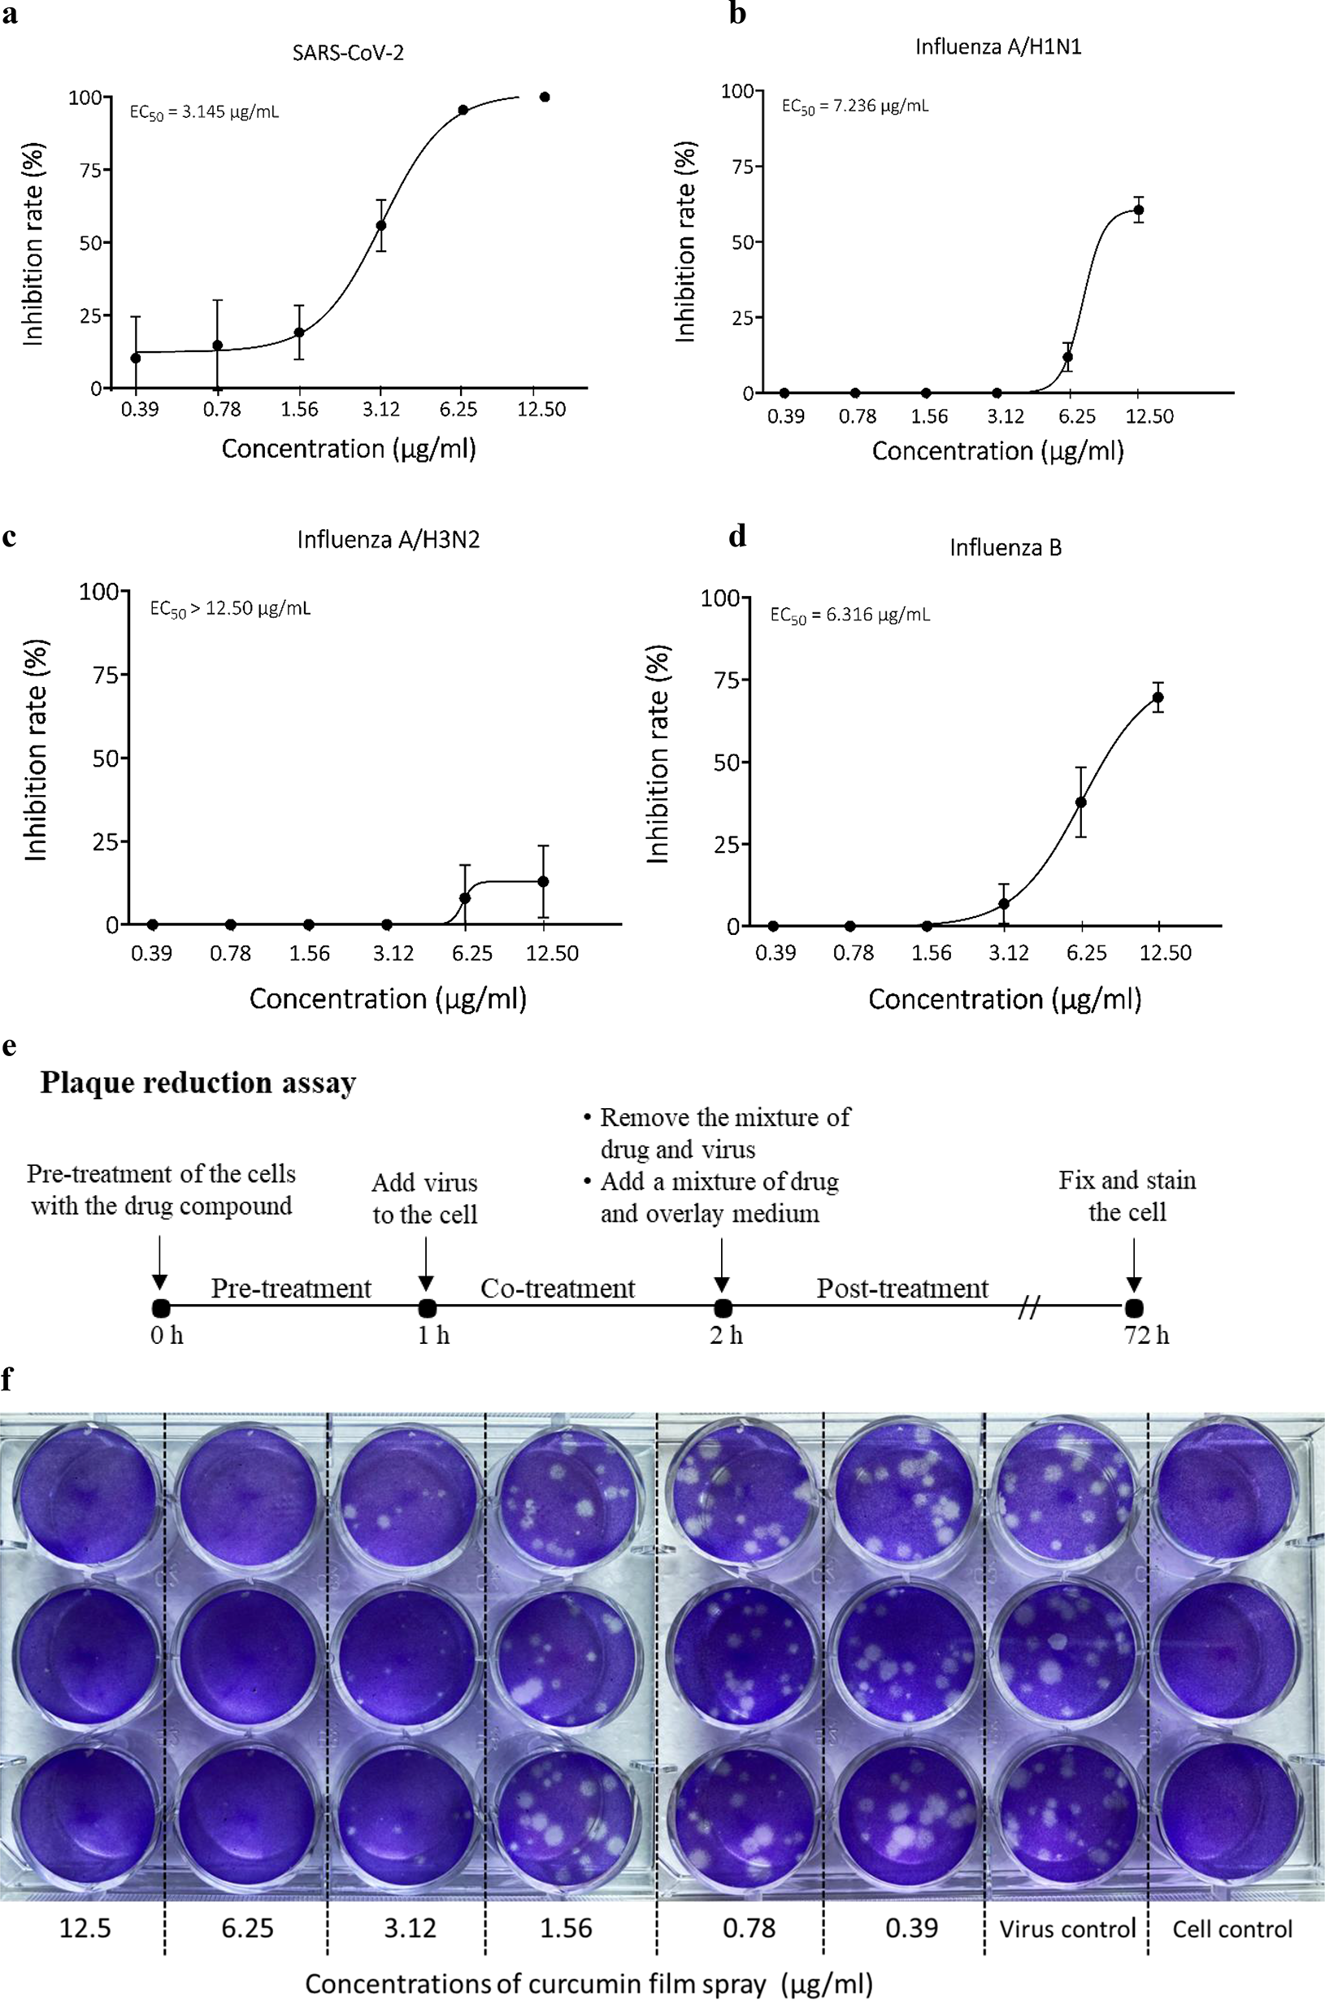 אפקט אנטי ויראלי של תרסיס סרט כורכומין נגד SARS-CoV-2 נבדק על ידי מבחן הפחתת פלאק.  עקומת מינון-תגובה של פעילות אנטי-ויראלית של תרסיס סרט כורכומין נגד;  (א) SARS-CoV-2, (ב) שפעת A/H1N1, (ג) שפעת A/H3N2, ו-(ד) נגיפי שפעת B, (ה) תרשים לבדיקת פעילות אנטי-ויראלית על ידי מבחן הפחתת פלאק, (ו) תמונה של ניסוי מבחן הפחתת פלאק.  כל ריכוז של תרסיס הסרט בוצע בבארות משולשת